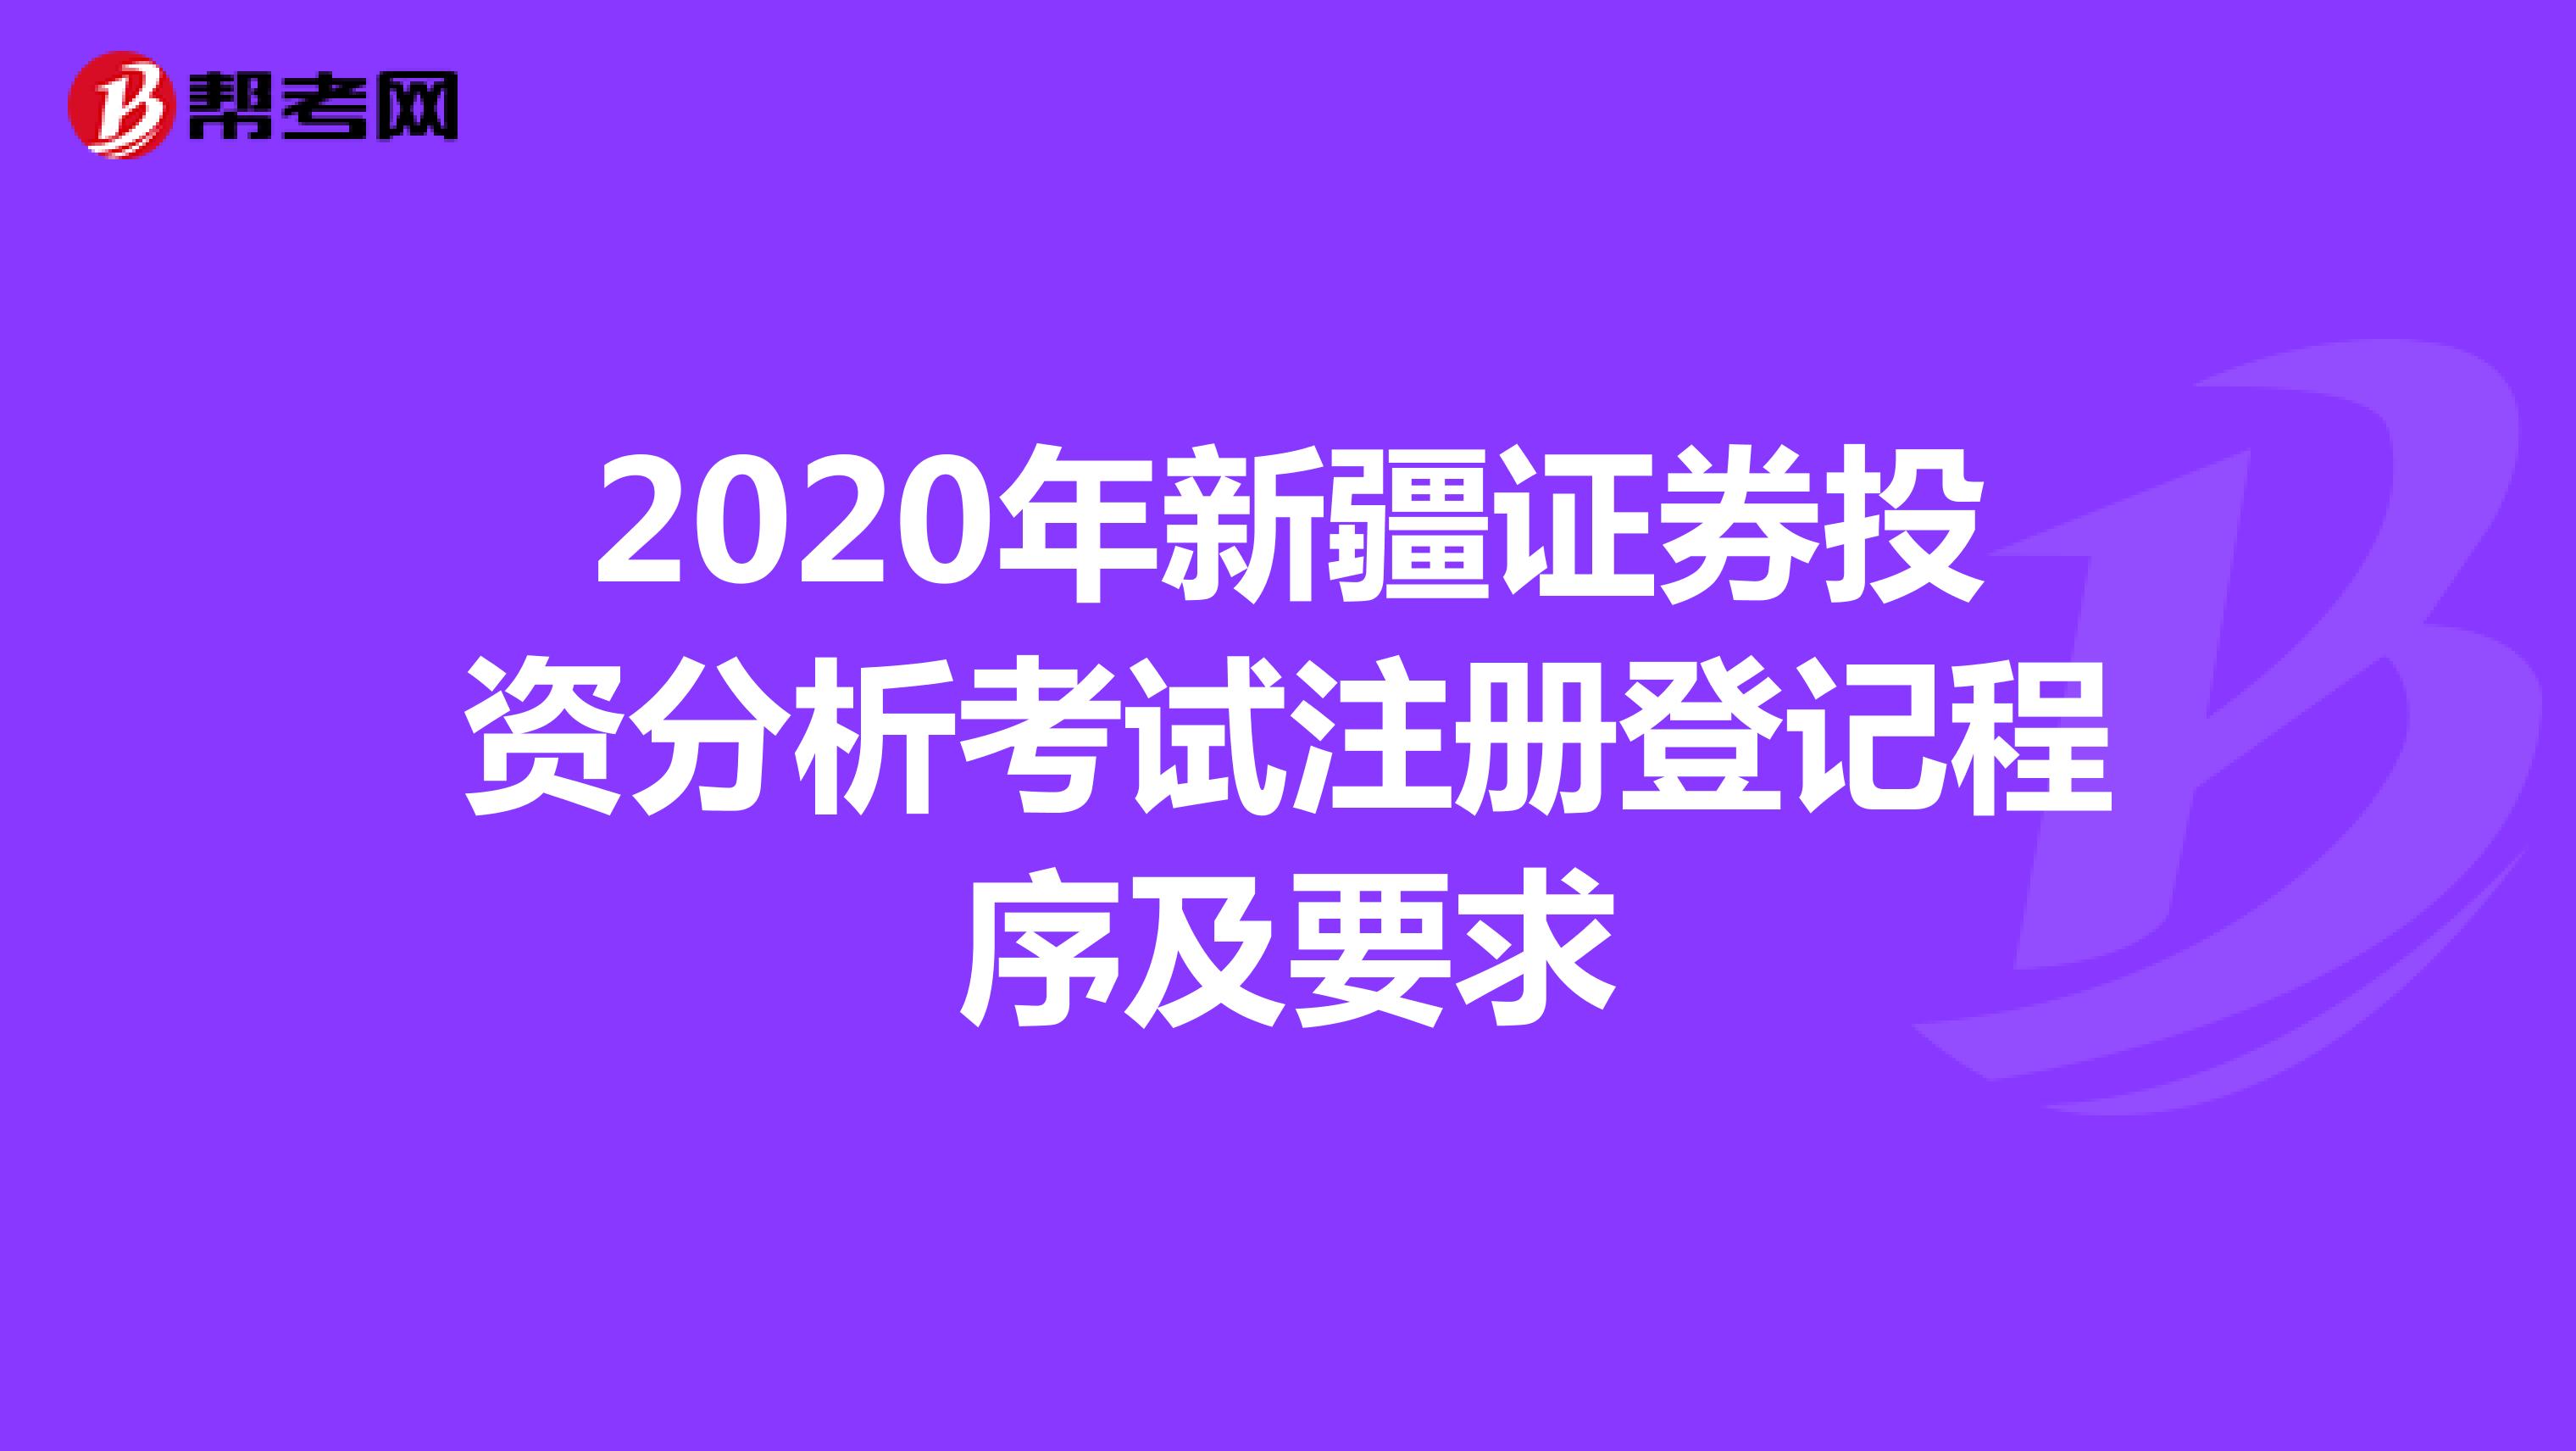 2020年新疆证券投资分析考试注册登记程序及要求